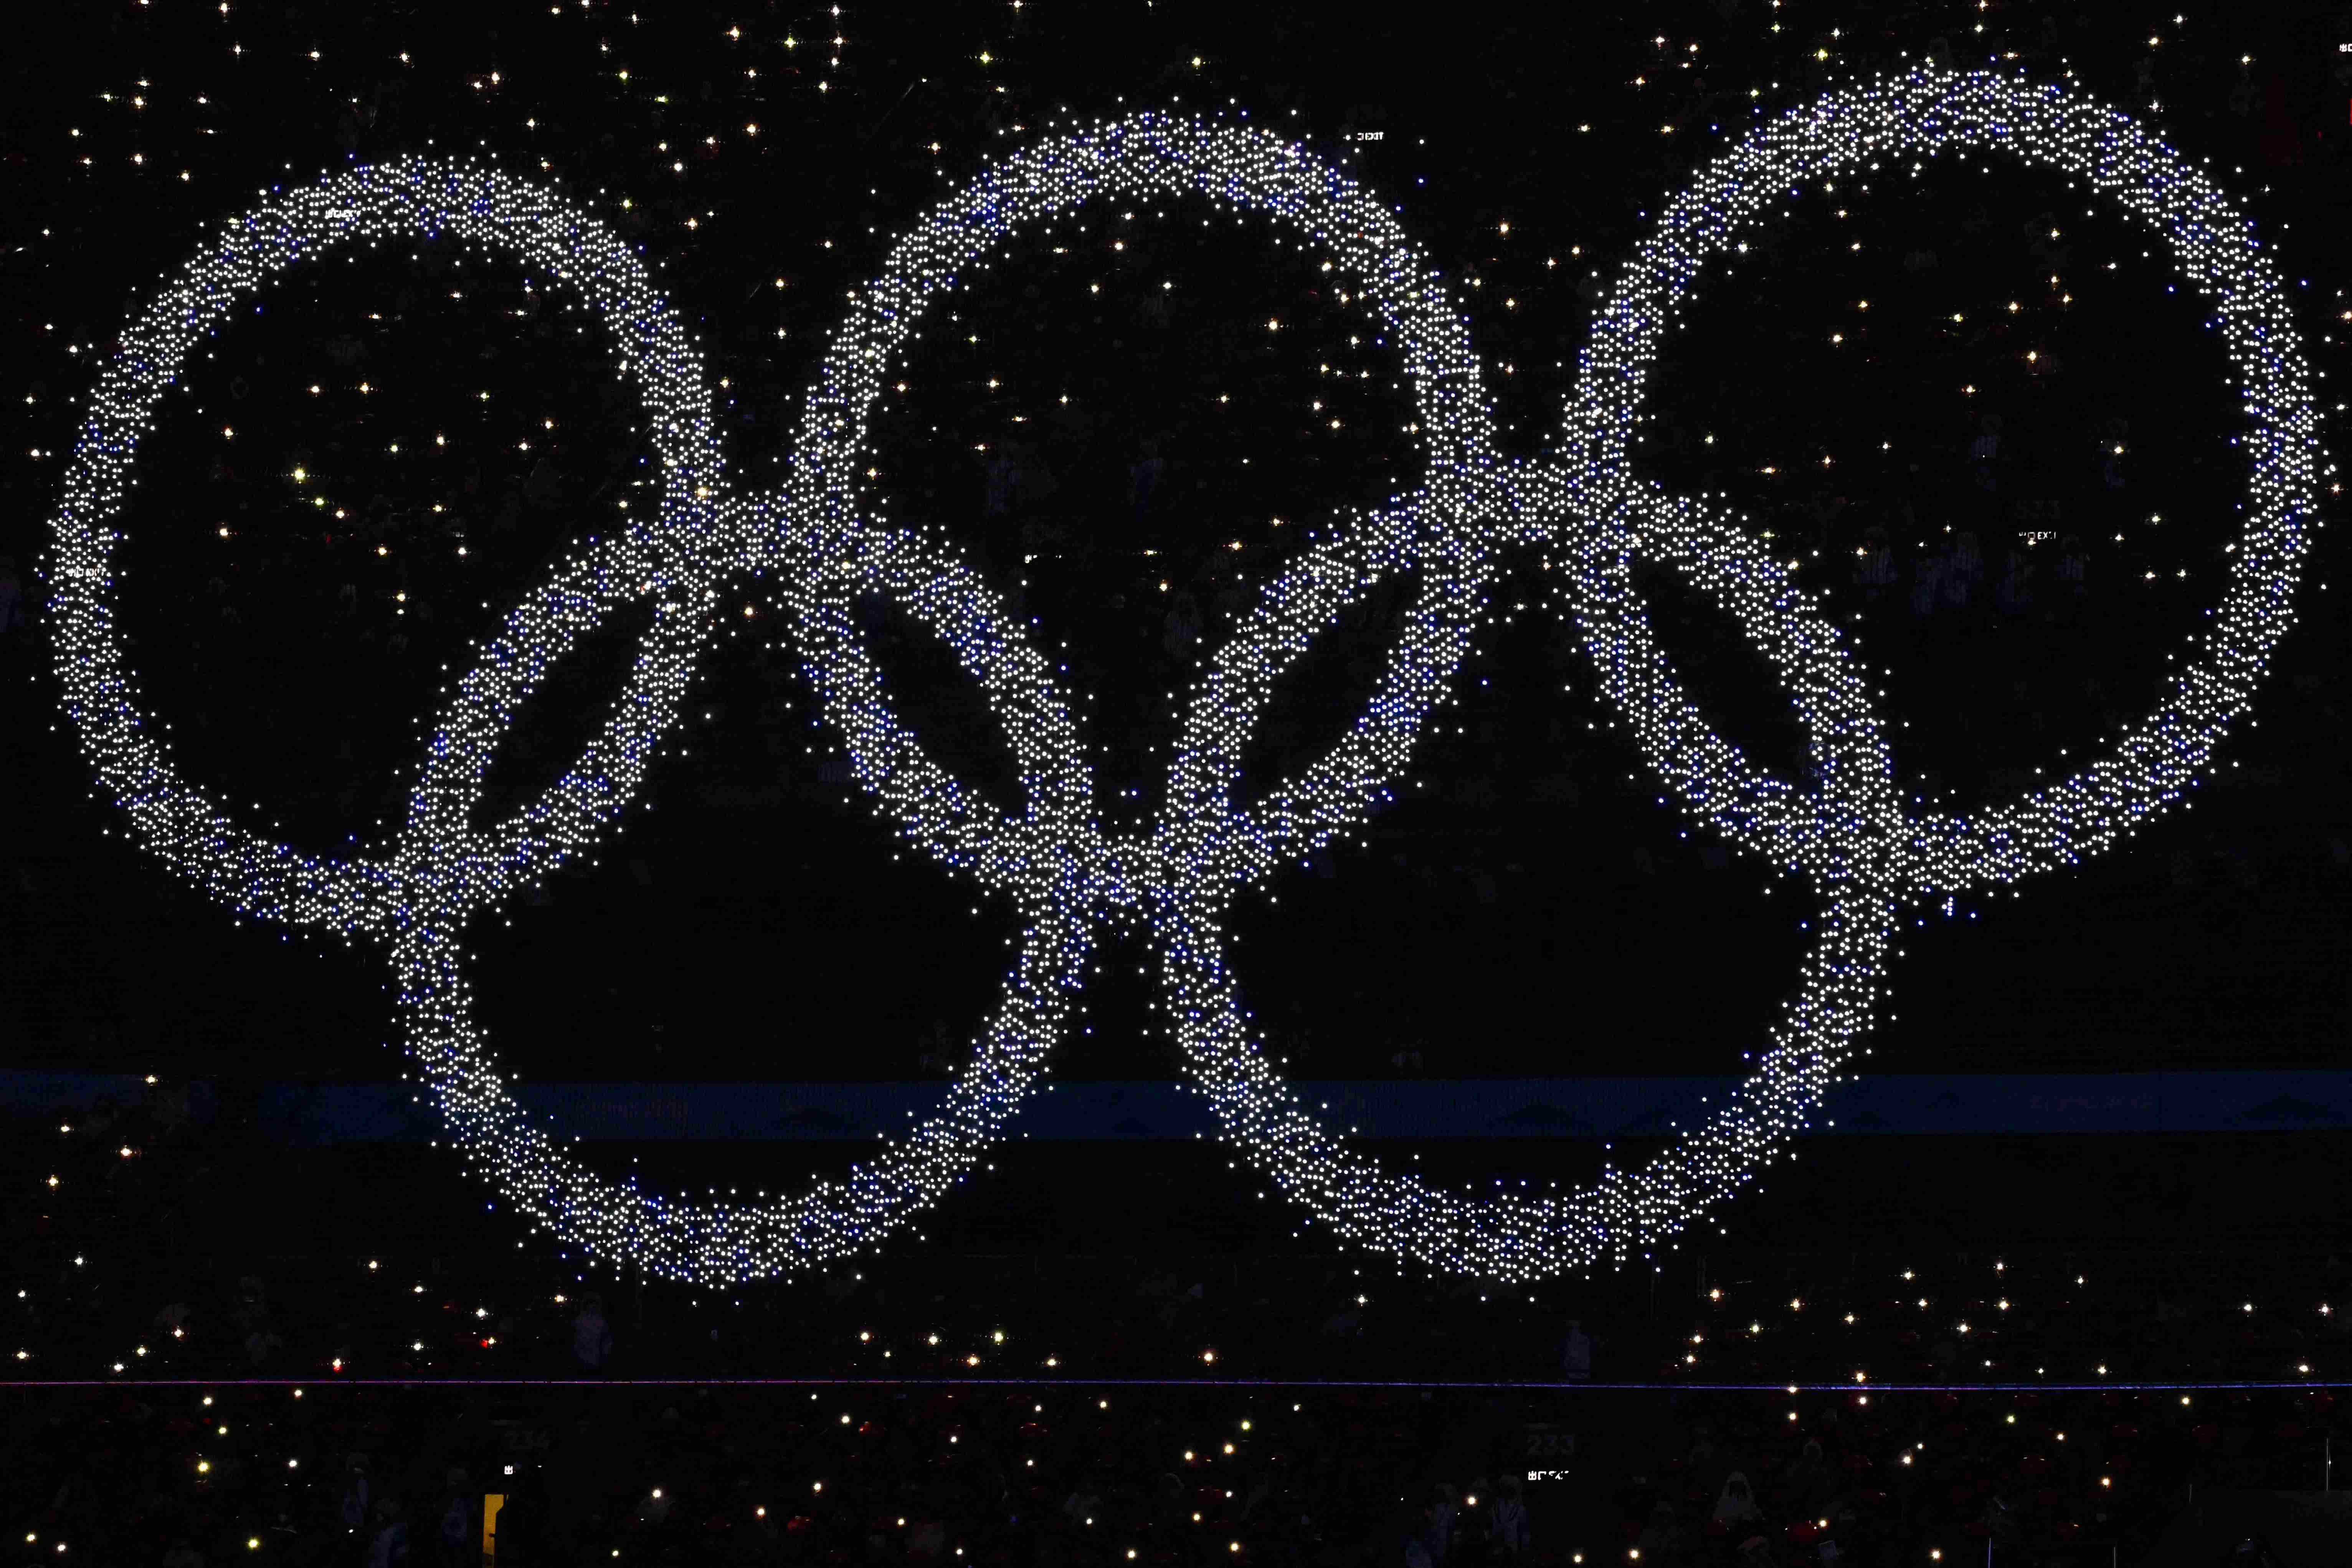 奥运五环带翅膀图片